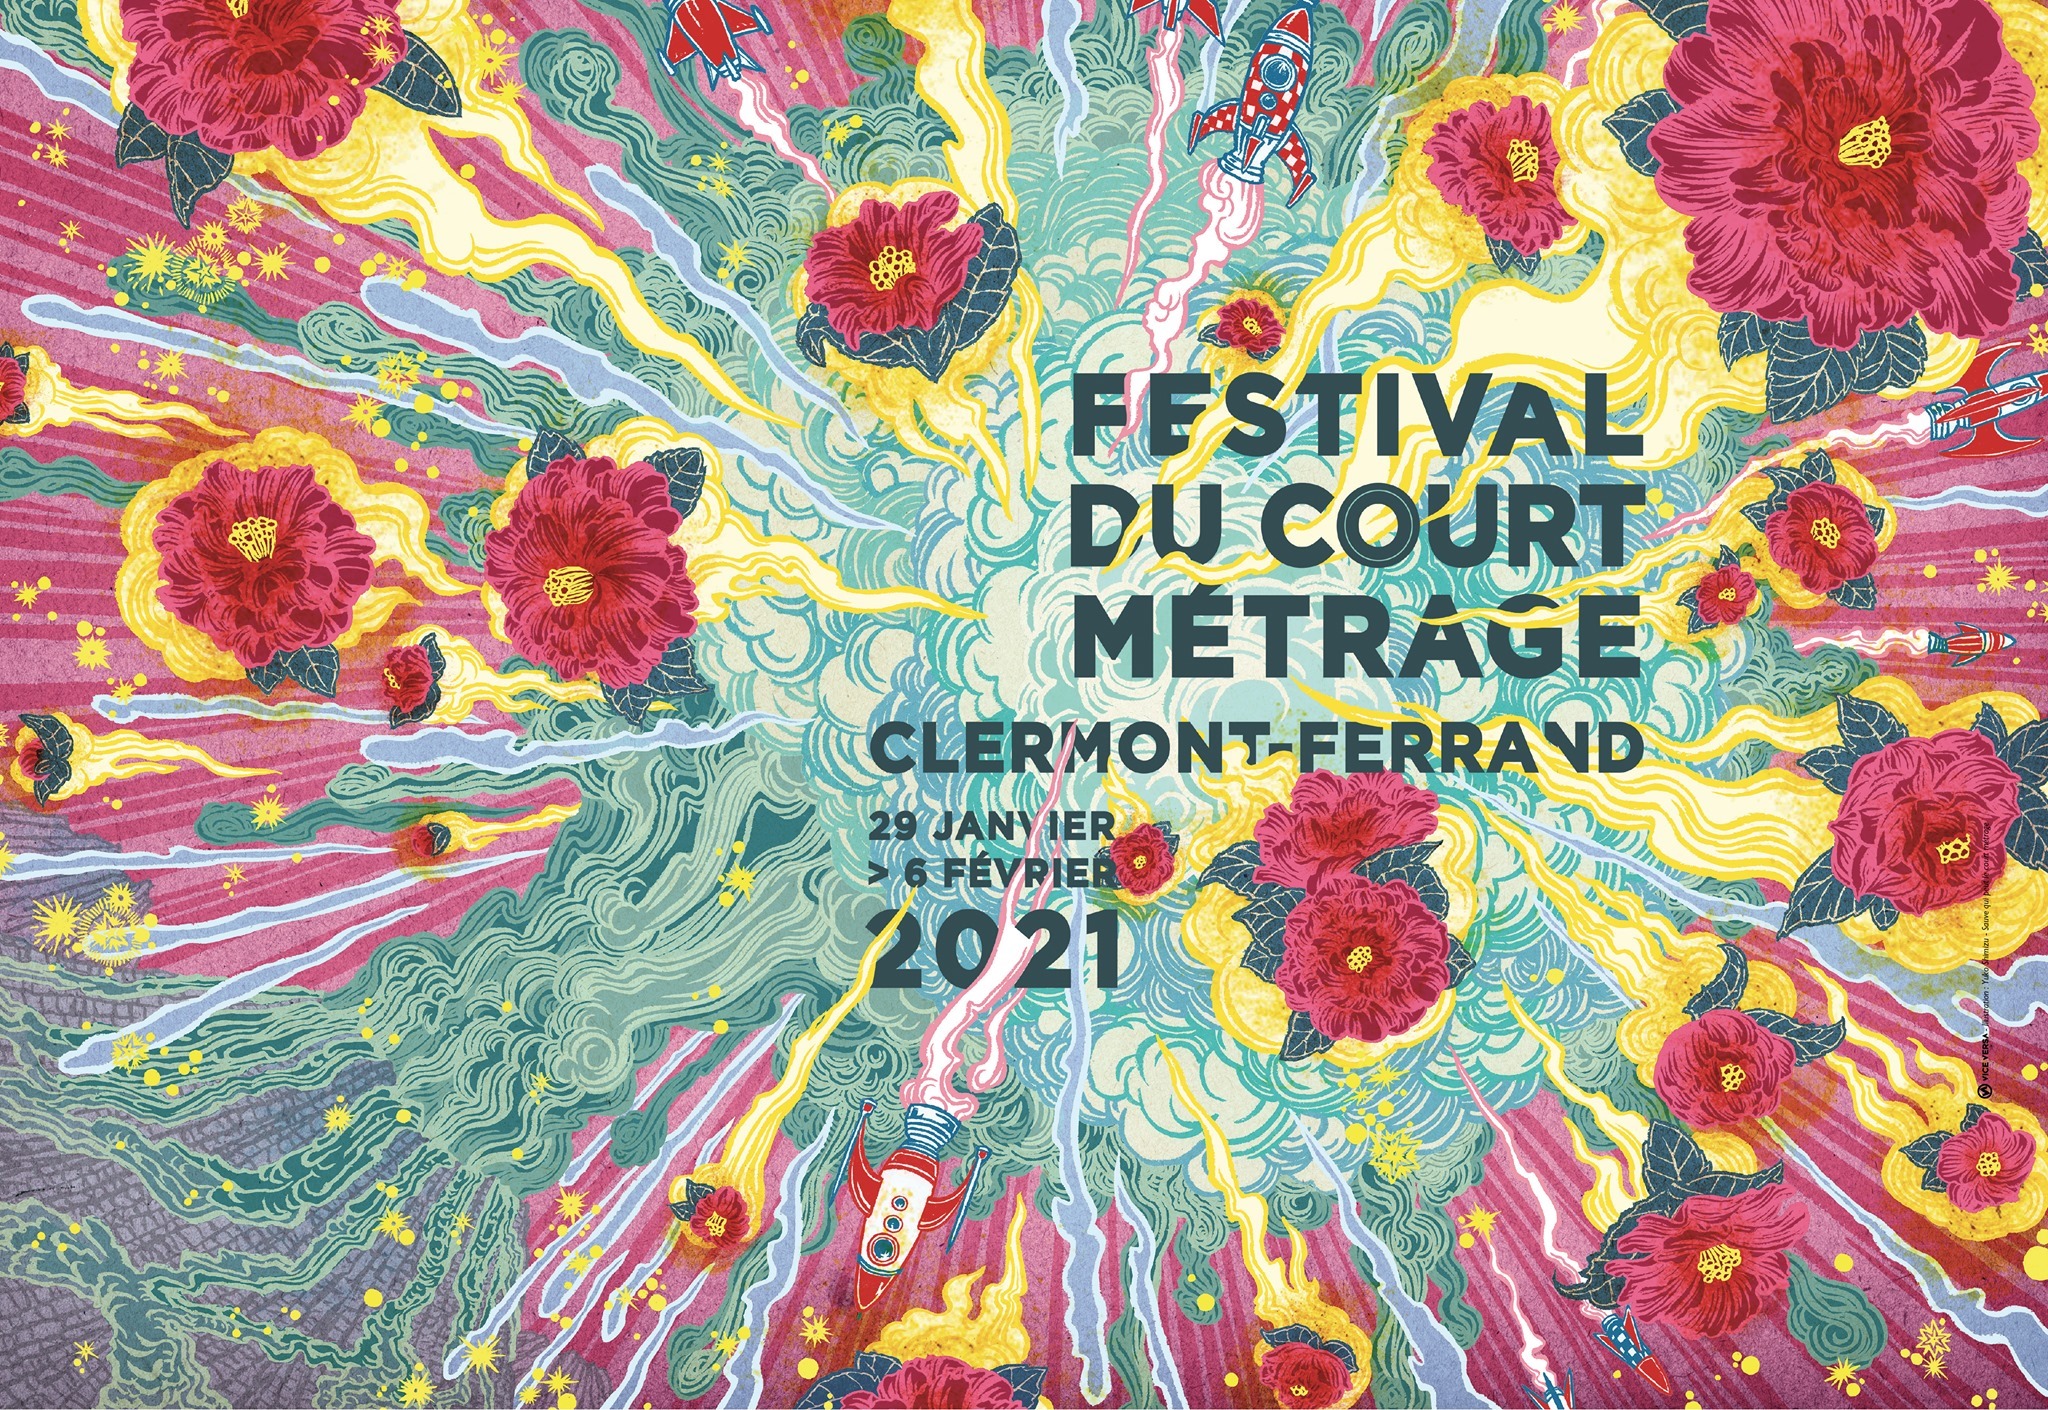 Festival International du courtmétrage de ClermontFerrand CinéFabrique